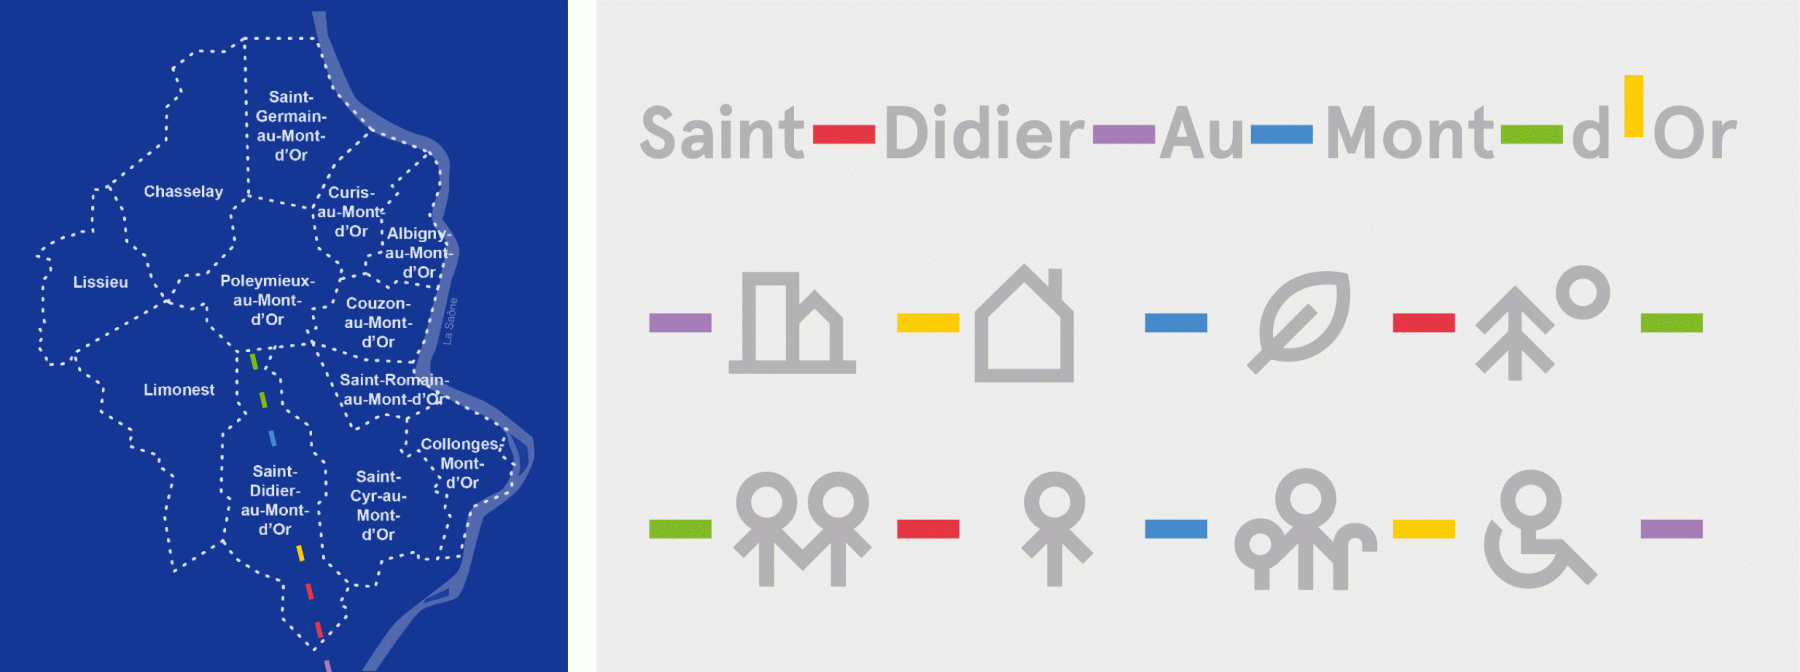 etude-logo-saint-didier-au-mont-d-or